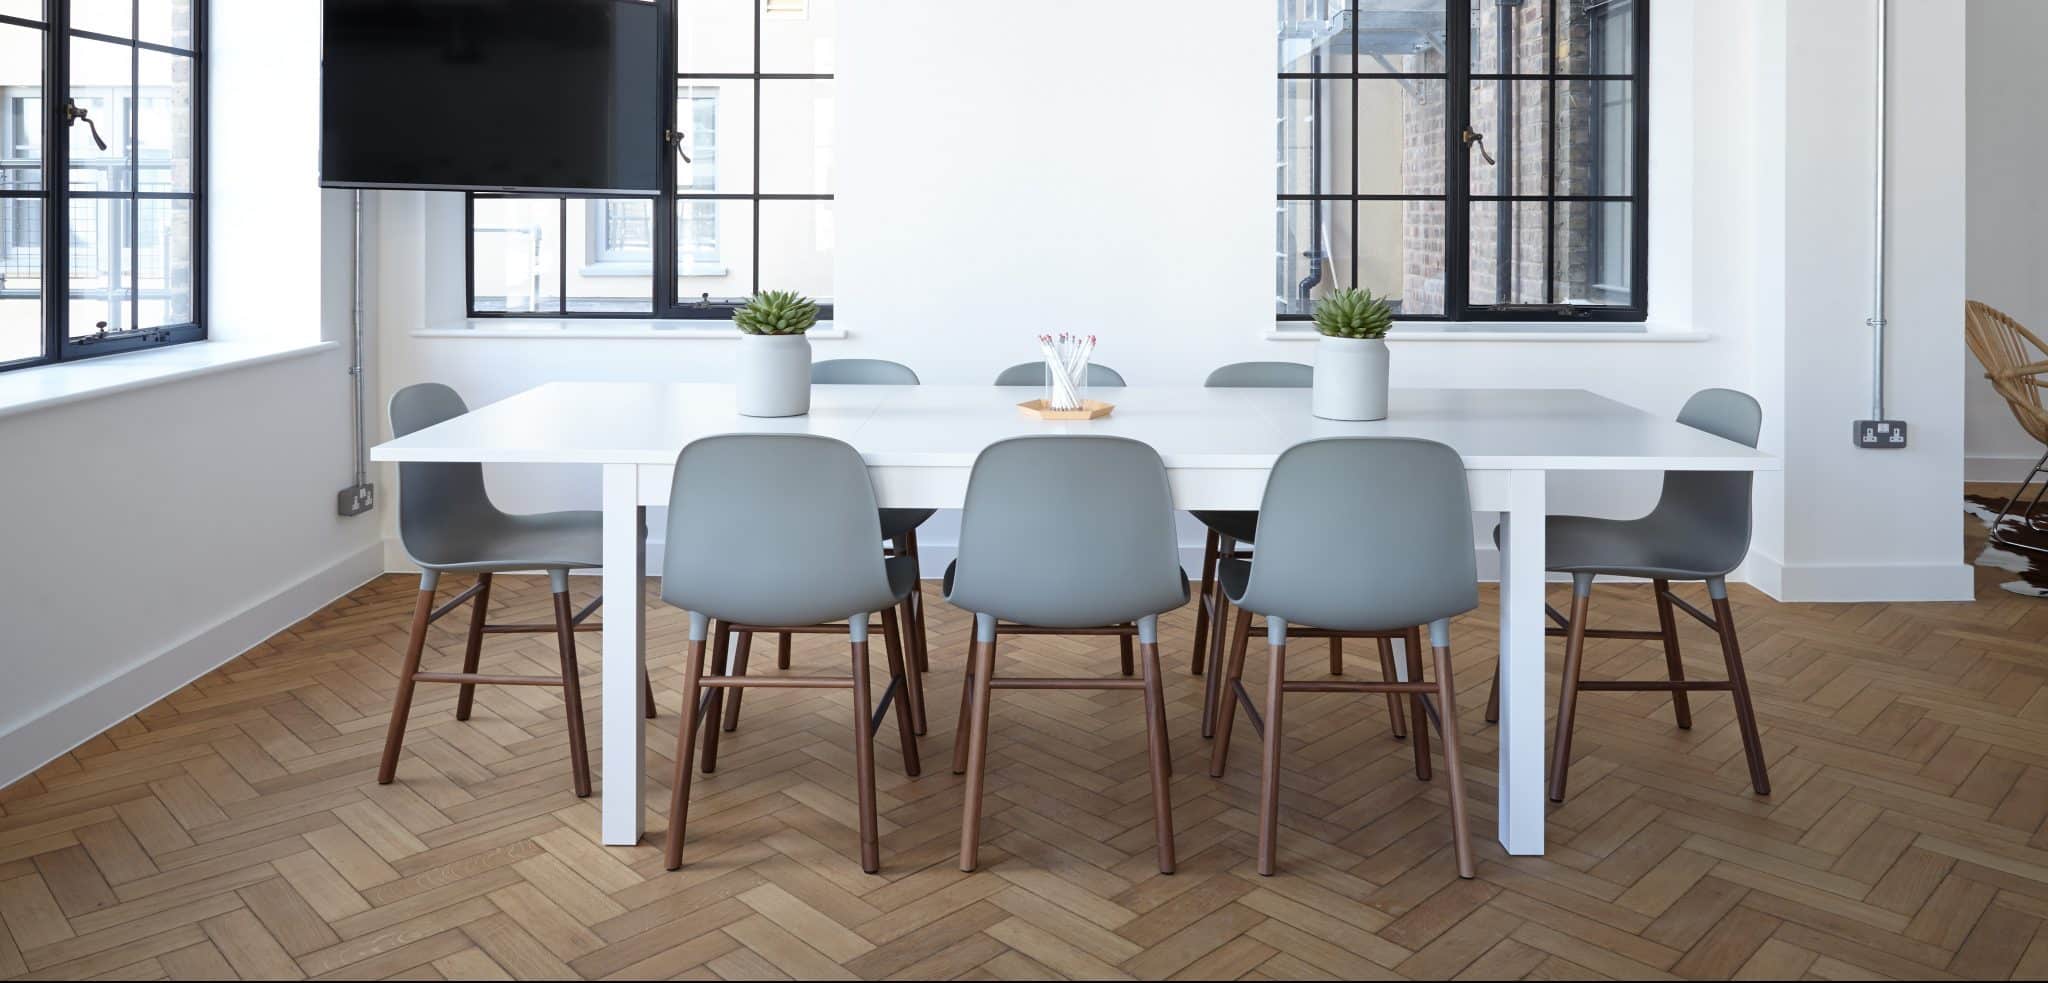 Image décorative - Table de réunion dans une pièce moderne